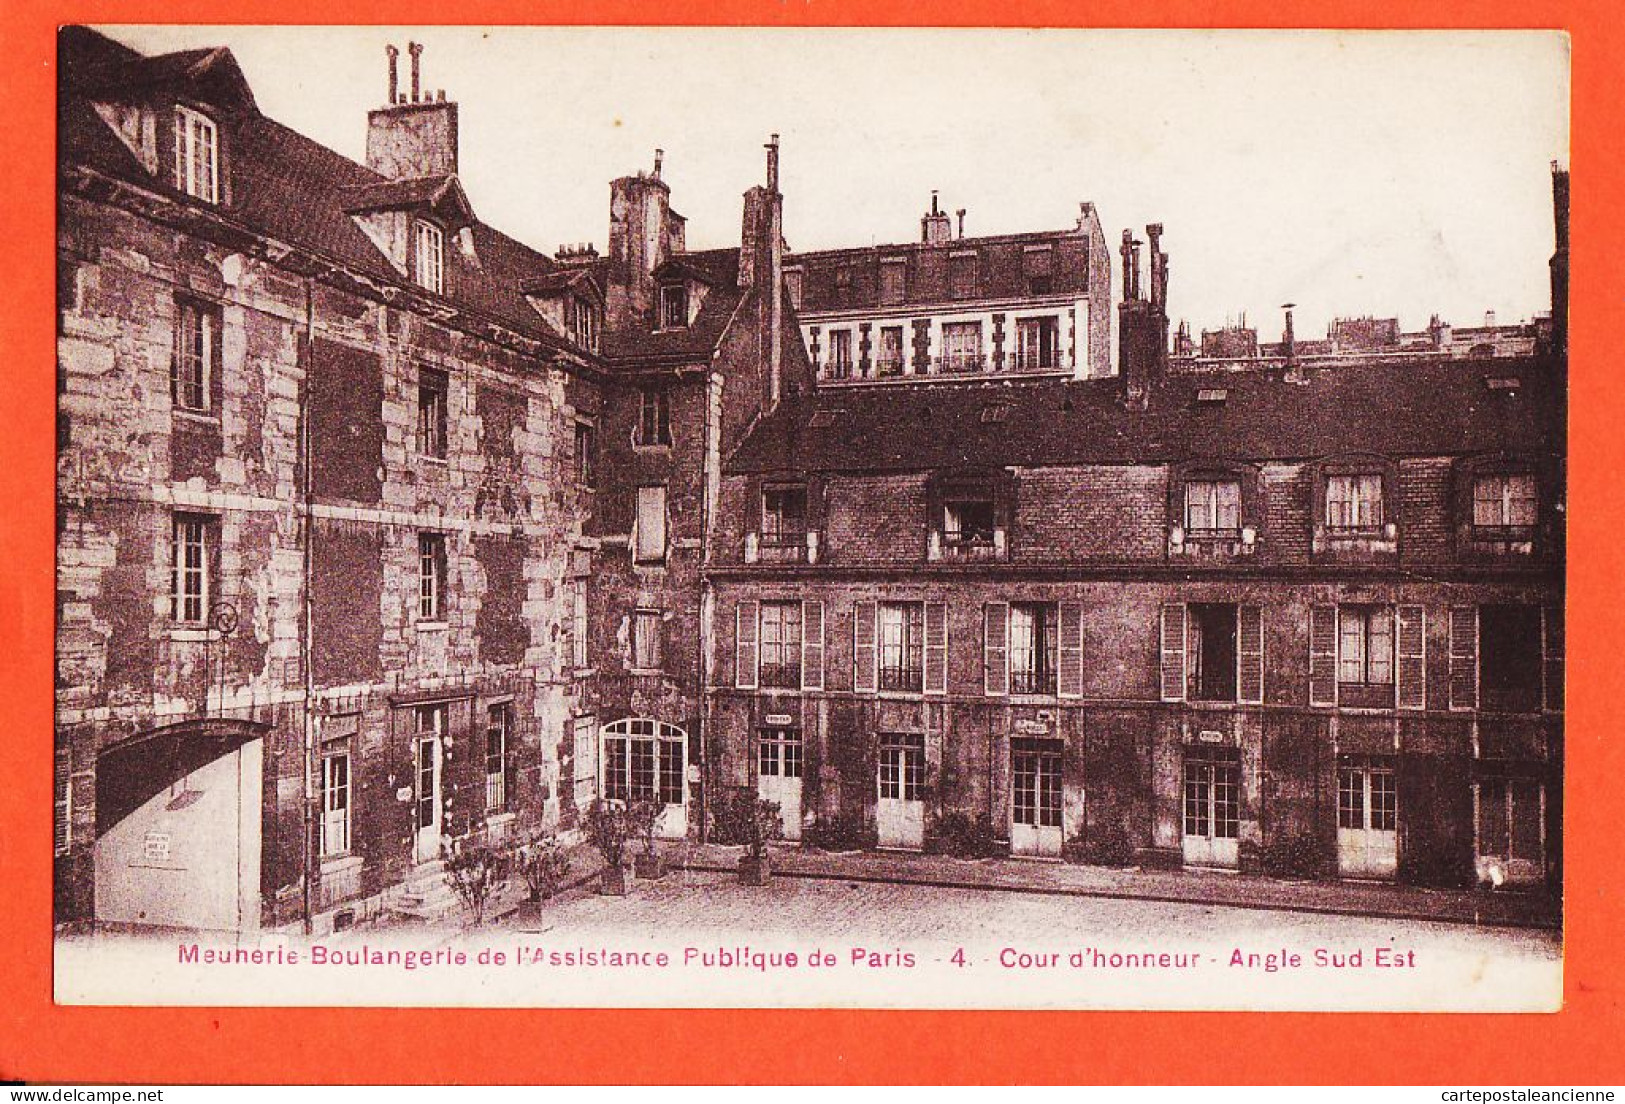 16382 / PARIS Meunerie Boulangerie Assistance Publique Cour Honneur Angle Sud-Est 1910s Simi-Bromure BREGER 4 - Santé, Hôpitaux